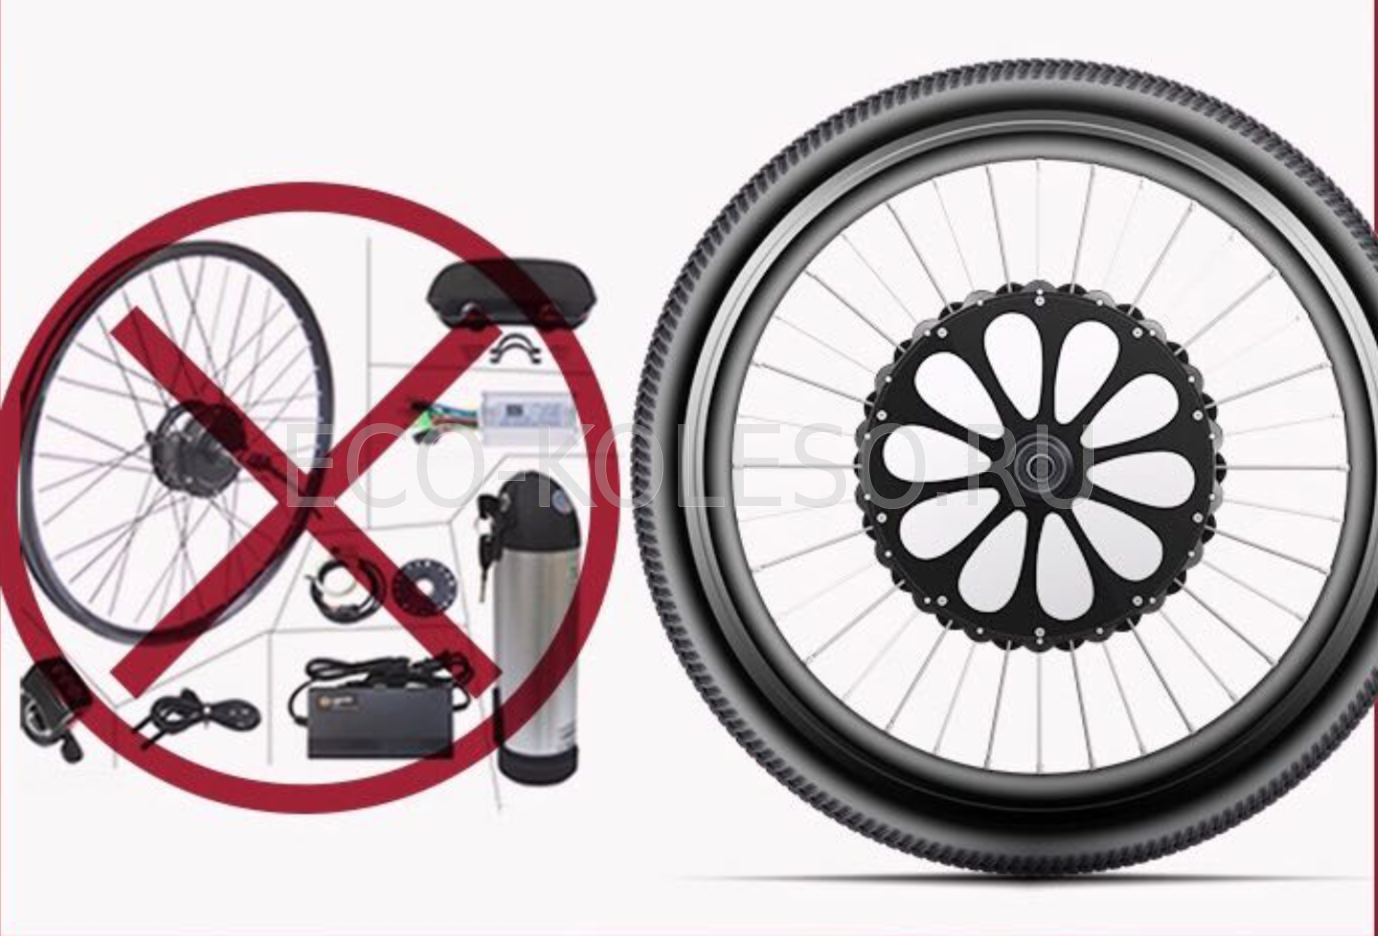 Эко колесо купить. Smart Eco koleso 350w. Умное электрическое мотор колесо Smart Eco koleso 350w. Smart Eco koleso 350w 26 1.95. Smart Eco koleso 350w 27.5 1.95.